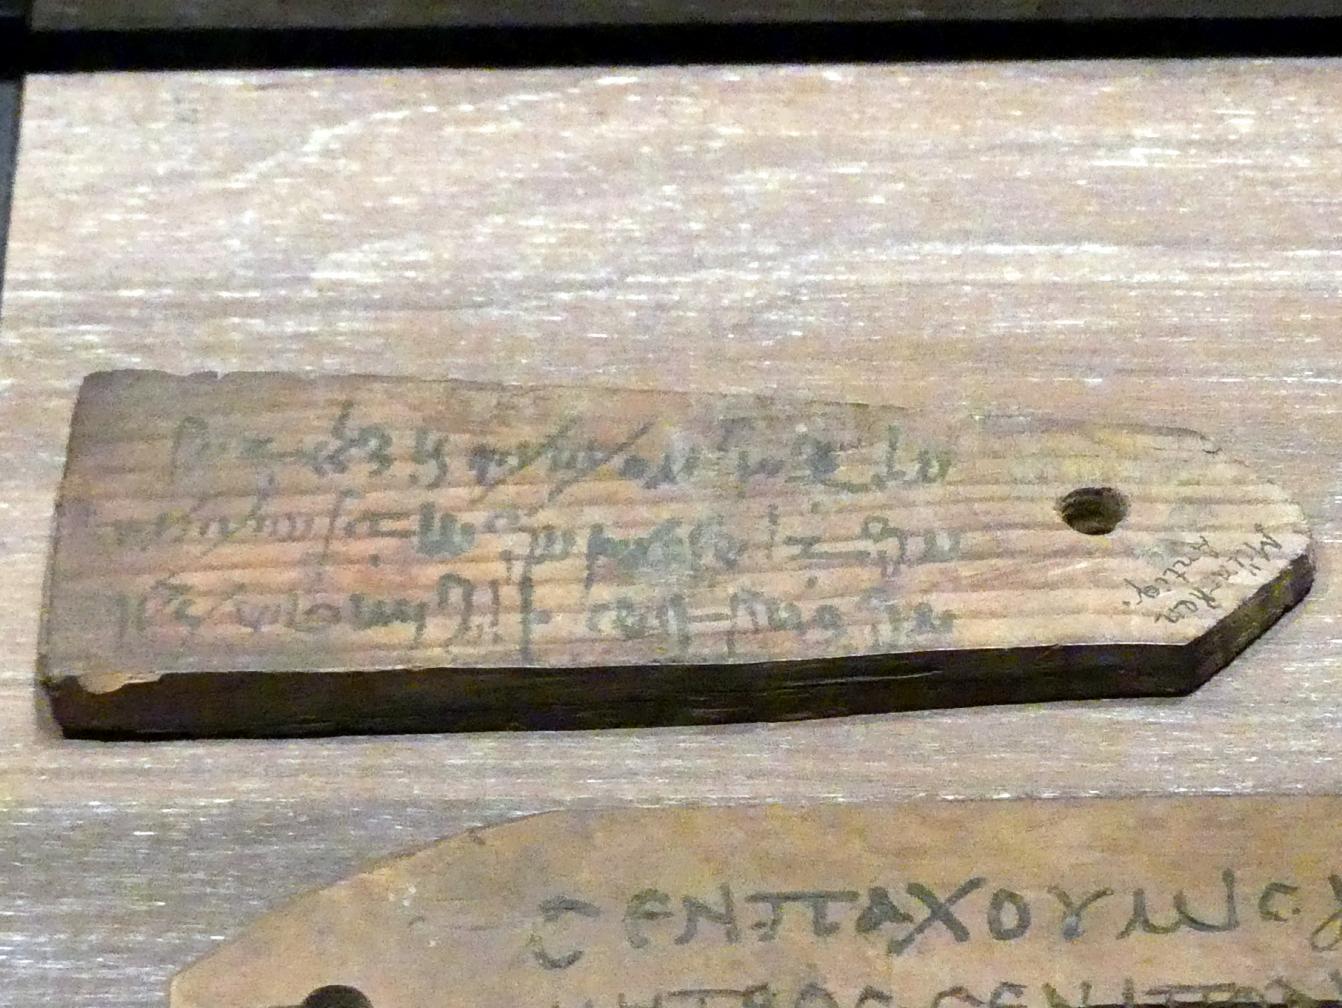 Etikette in Demotisch zur namentlichen Kennzeichnung einer Mumie, Römische Kaiserzeit, 27 v. Chr. - 54 n. Chr., 100 - 200